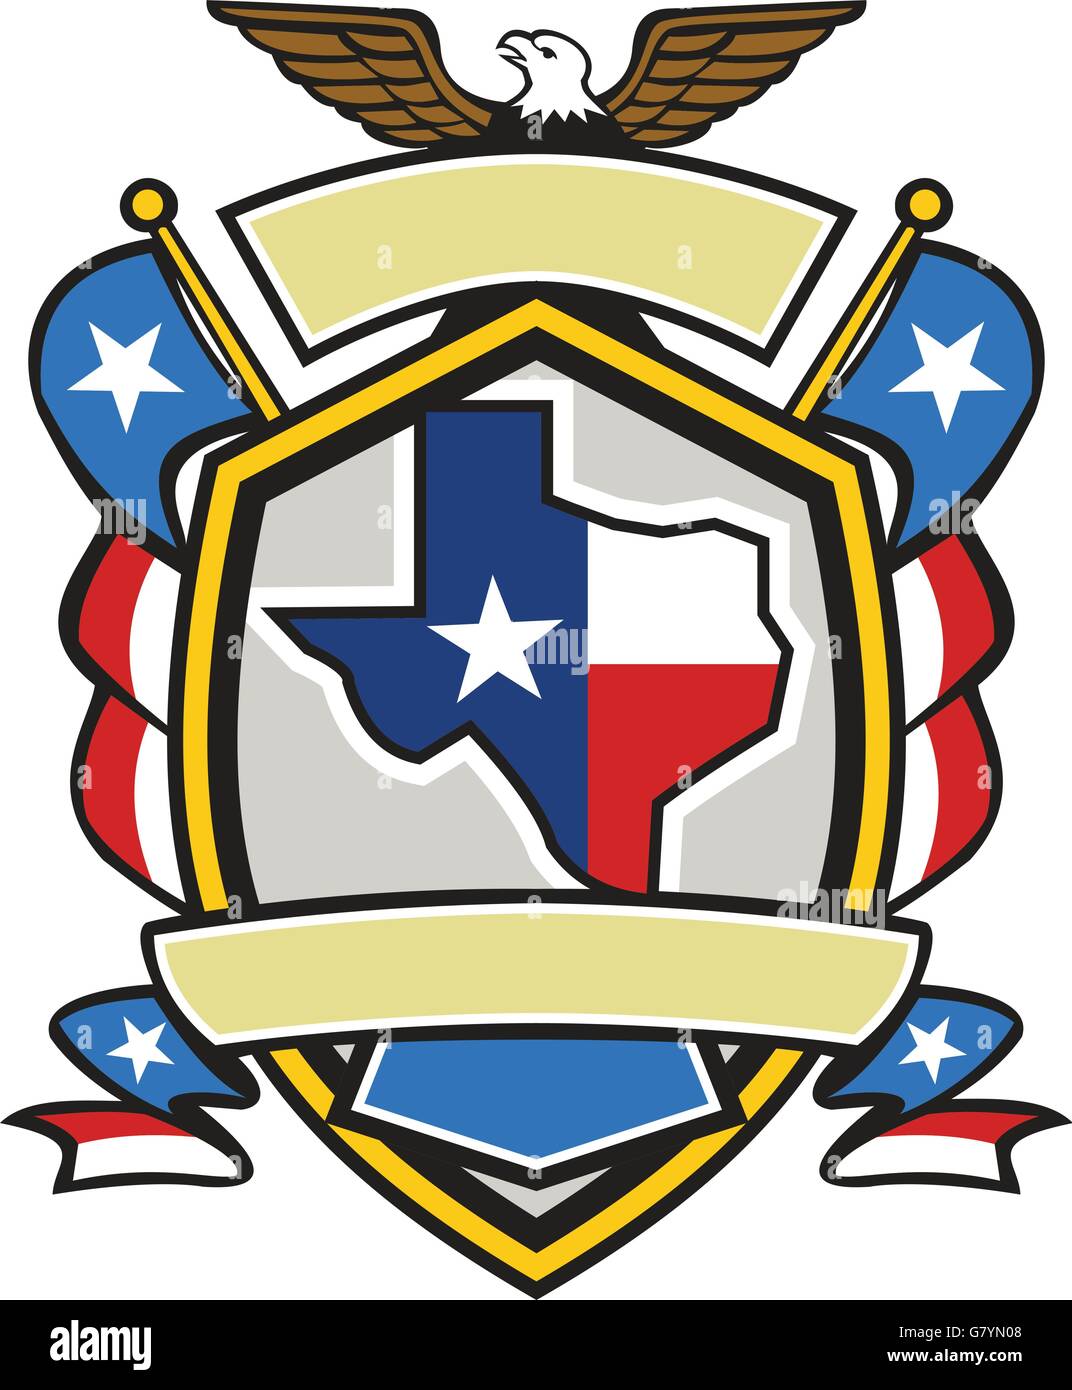 Abbildung des Wappens Stil Emblem der Texas State Karte drapiert in seine Staatsflagge mit American Eagle oben an der Spitze und entrollten Texaner lone star Flaggen seitlich im Inneren Wappen Schild im retro-Stil gemacht. Stock Vektor